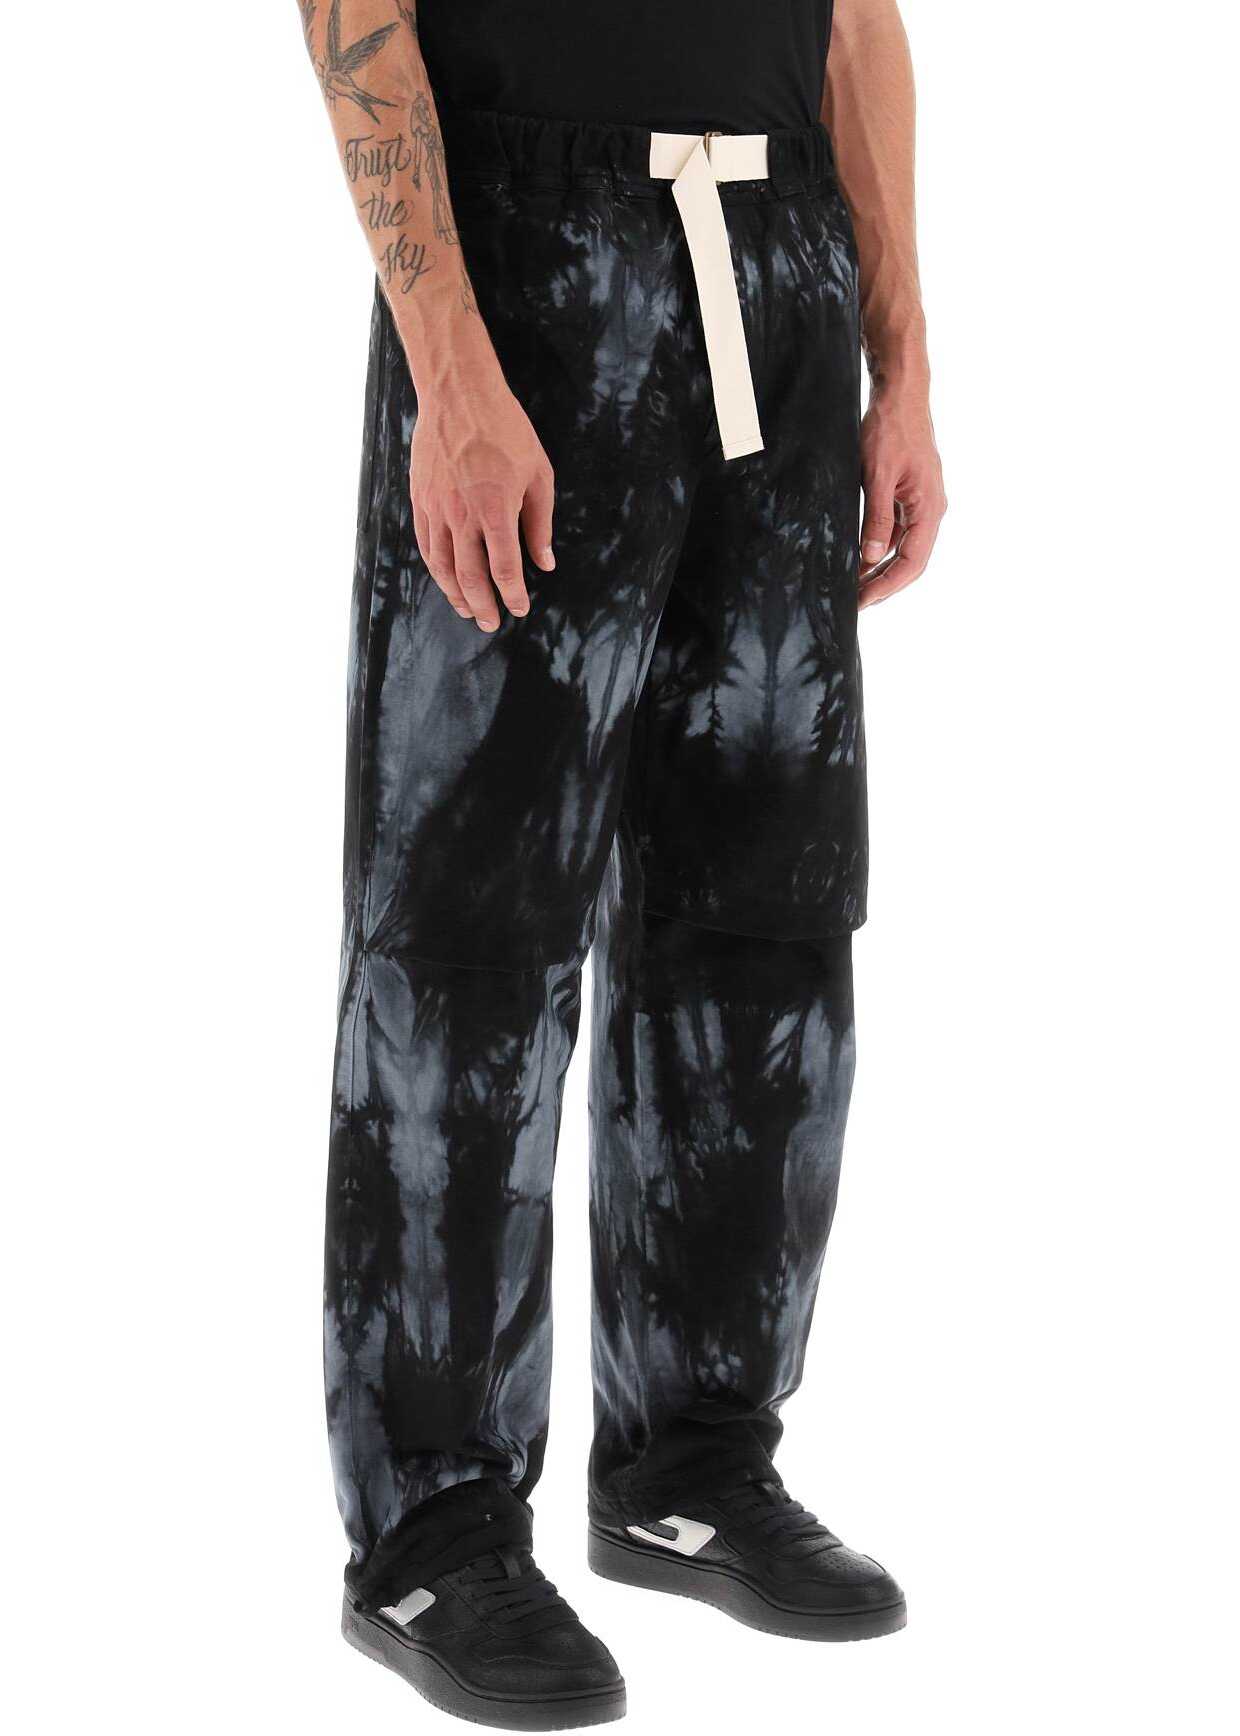 DARKPARK Jordan Tie-Dye Pants BLACK GREY